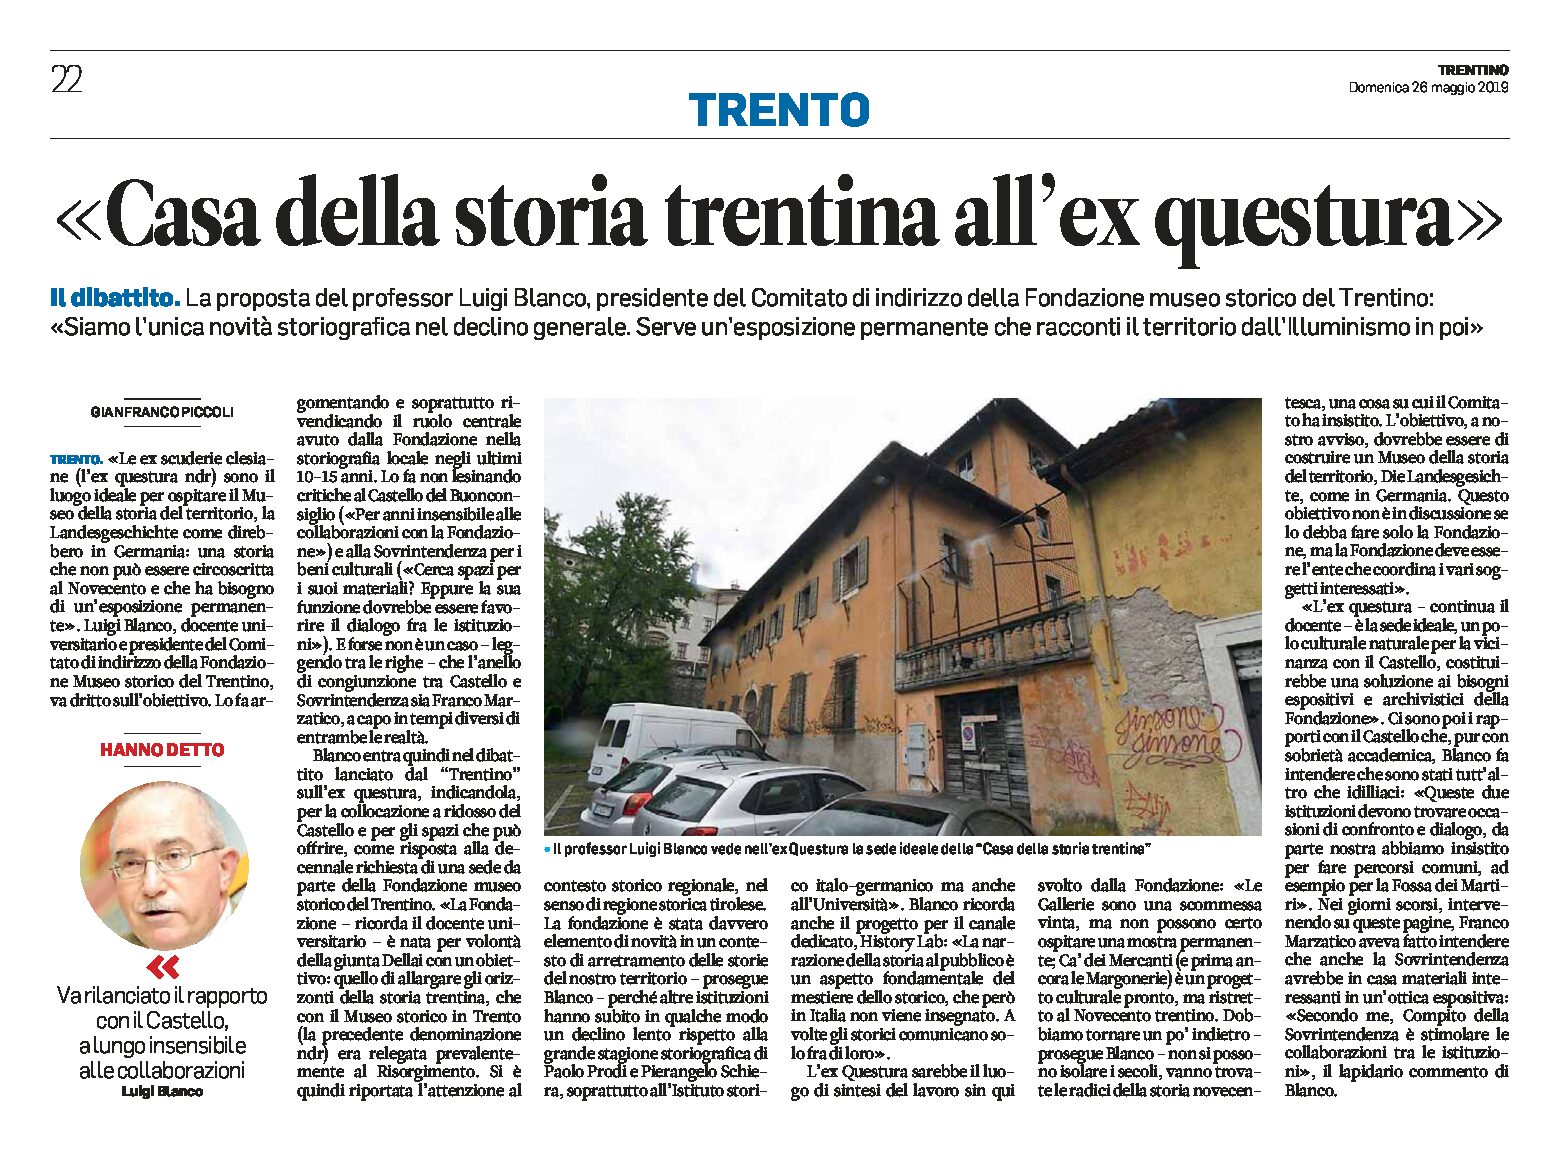 Trento, ex Questura: casa della storia trentina, proposta di Blanco